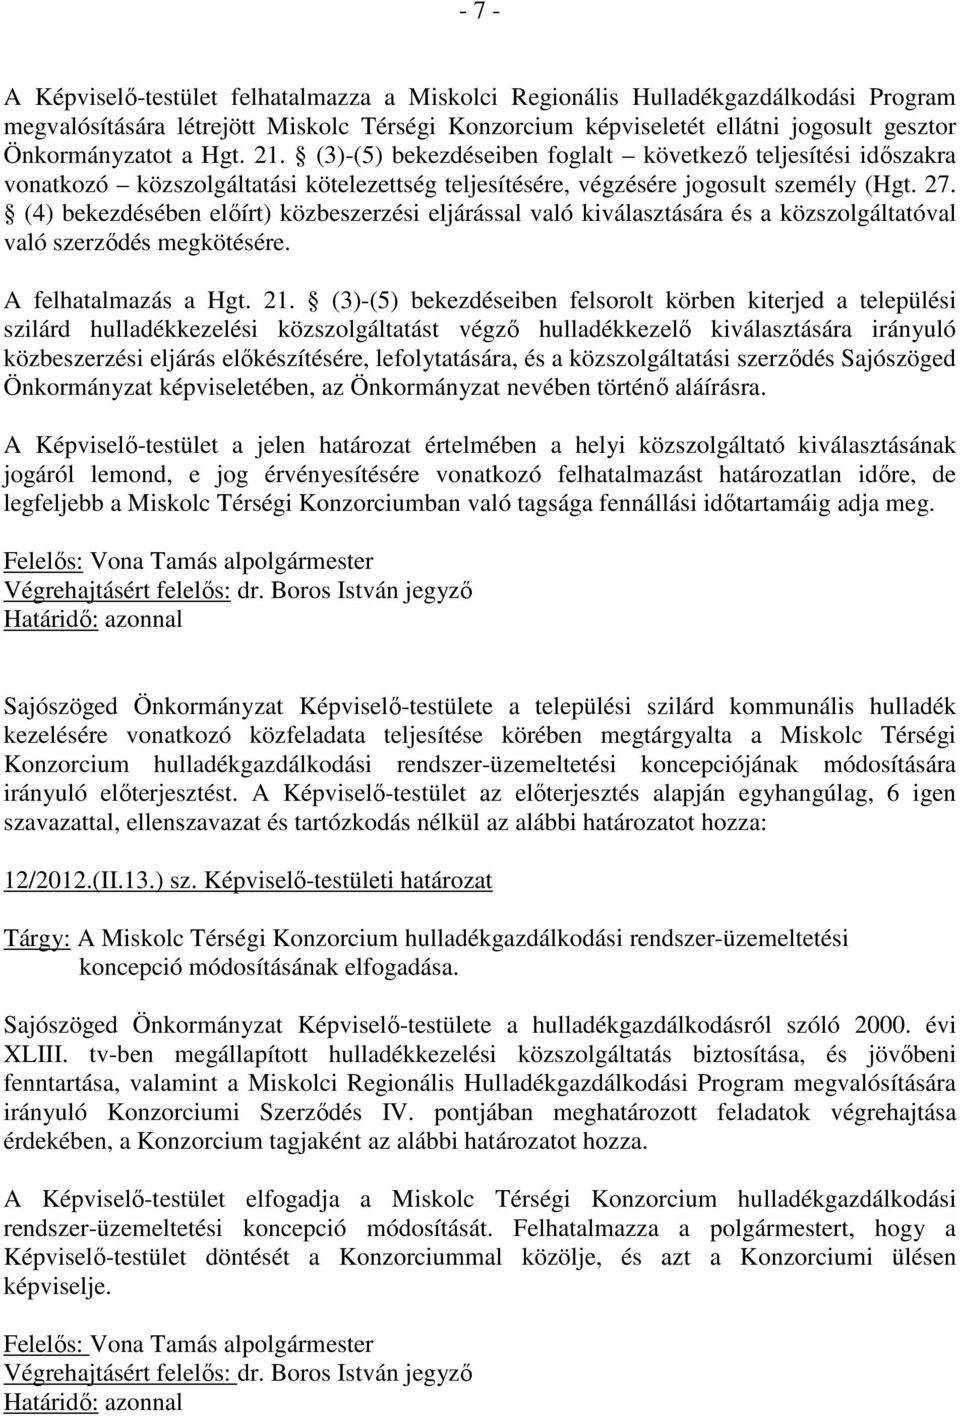 (4) bekezdésében elıírt) közbeszerzési eljárással való kiválasztására és a közszolgáltatóval való szerzıdés megkötésére. A felhatalmazás a Hgt. 21.